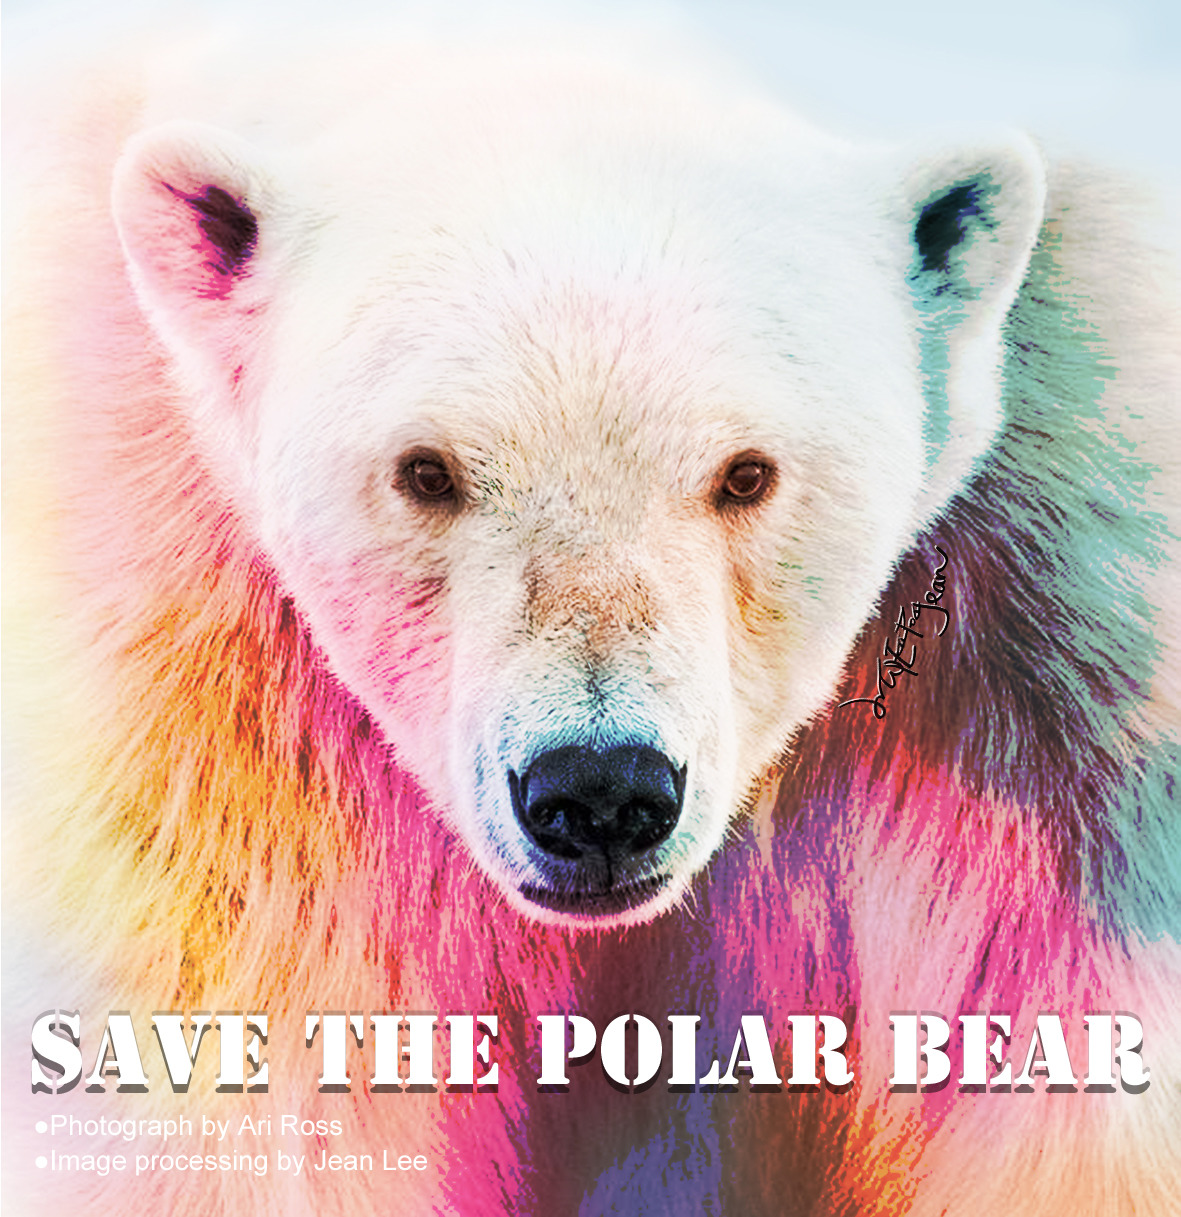 Save the Polar Bear (R).jpg